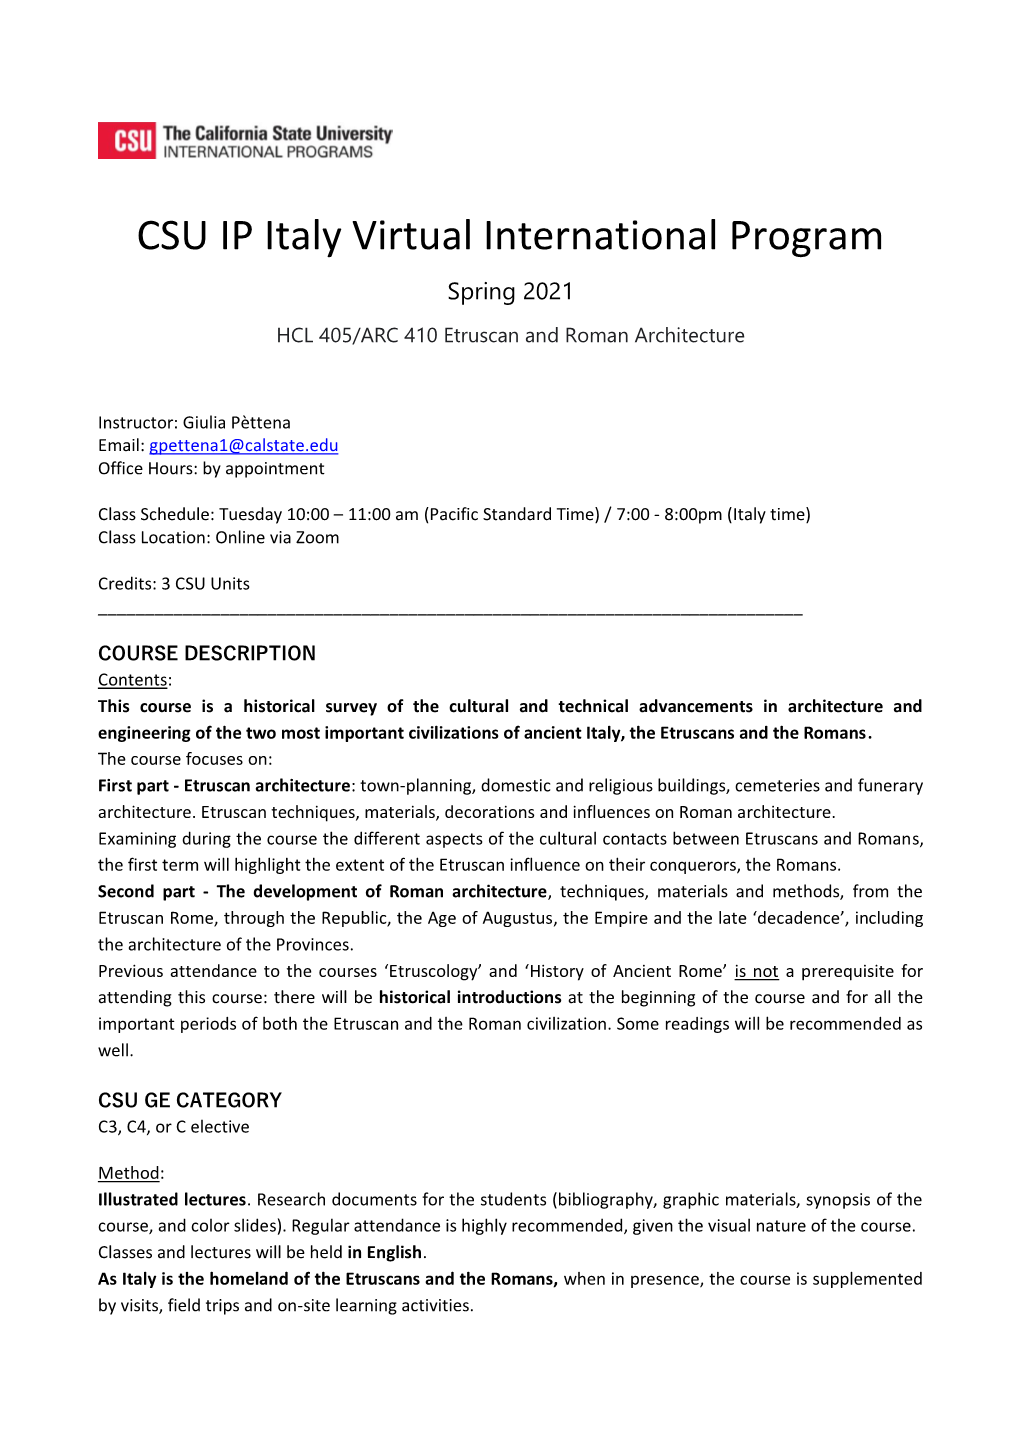 CSU IP Italy Virtual International Program Spring 2021